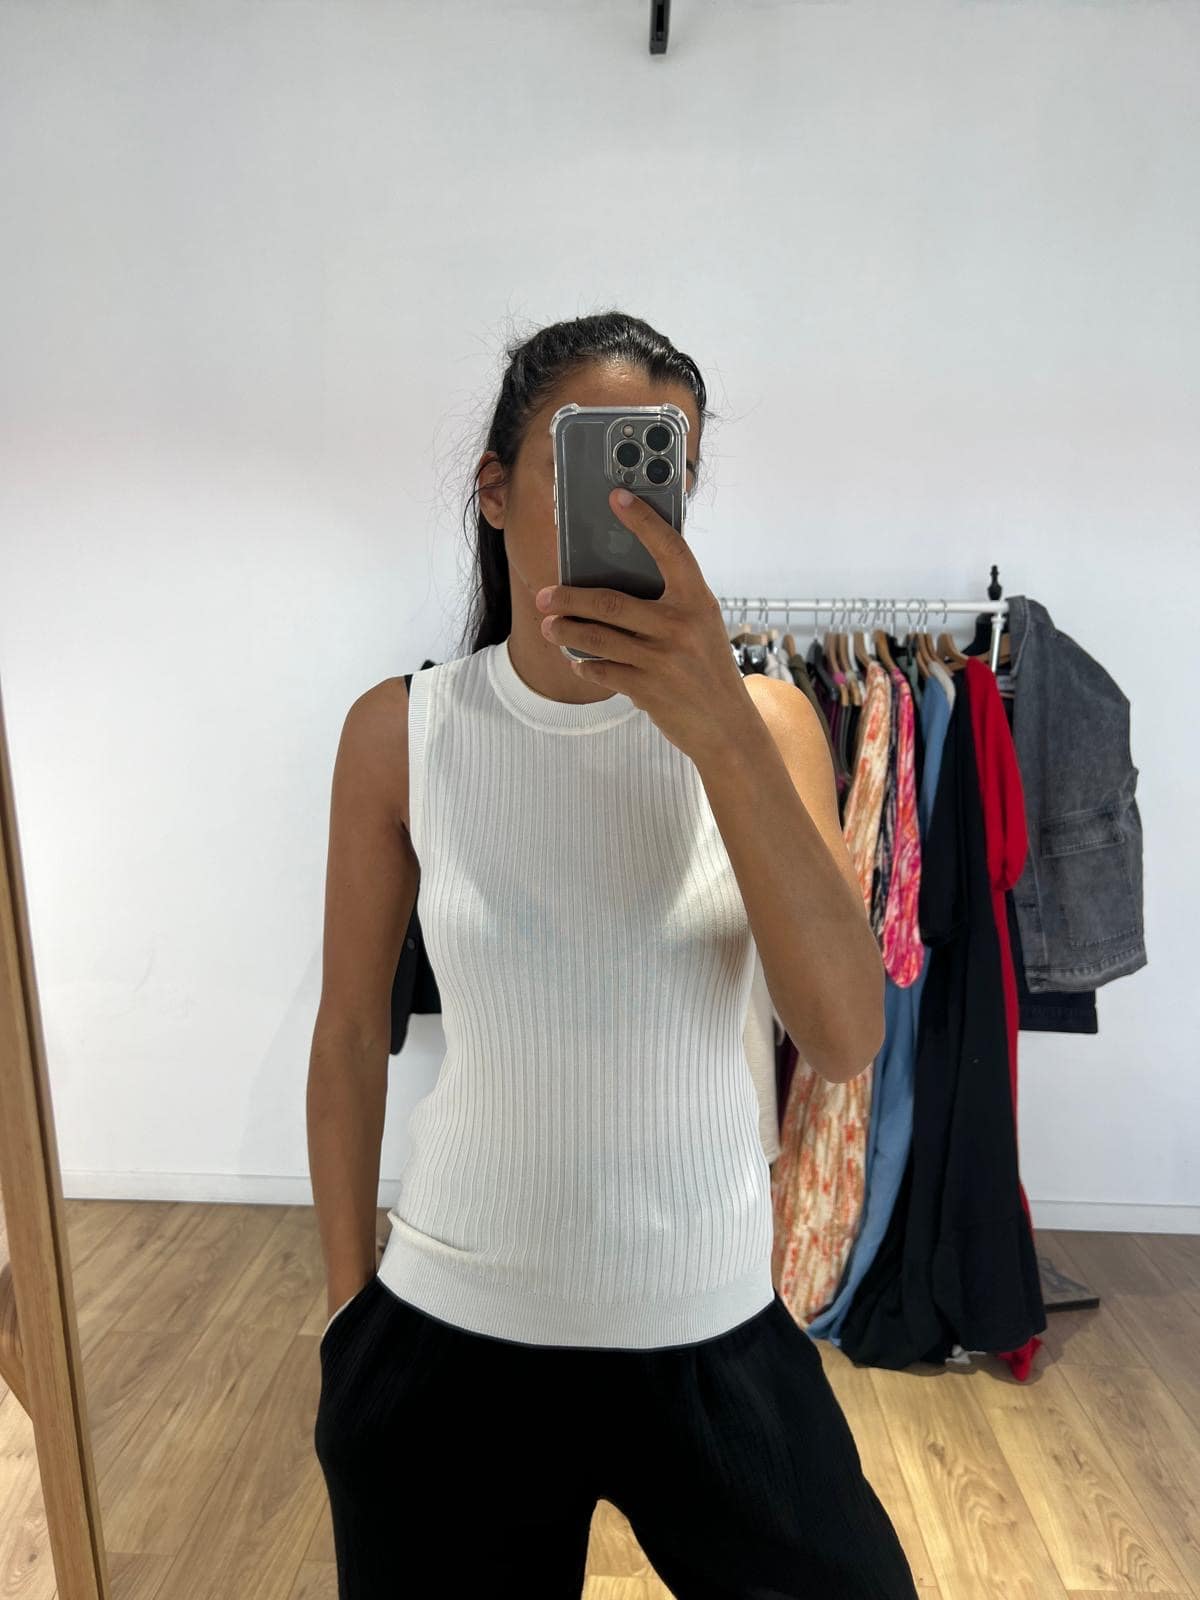 Femme portant un haut sans manche blanc, prenant un selfie devant un miroir avec des vêtements en arrière-plan.